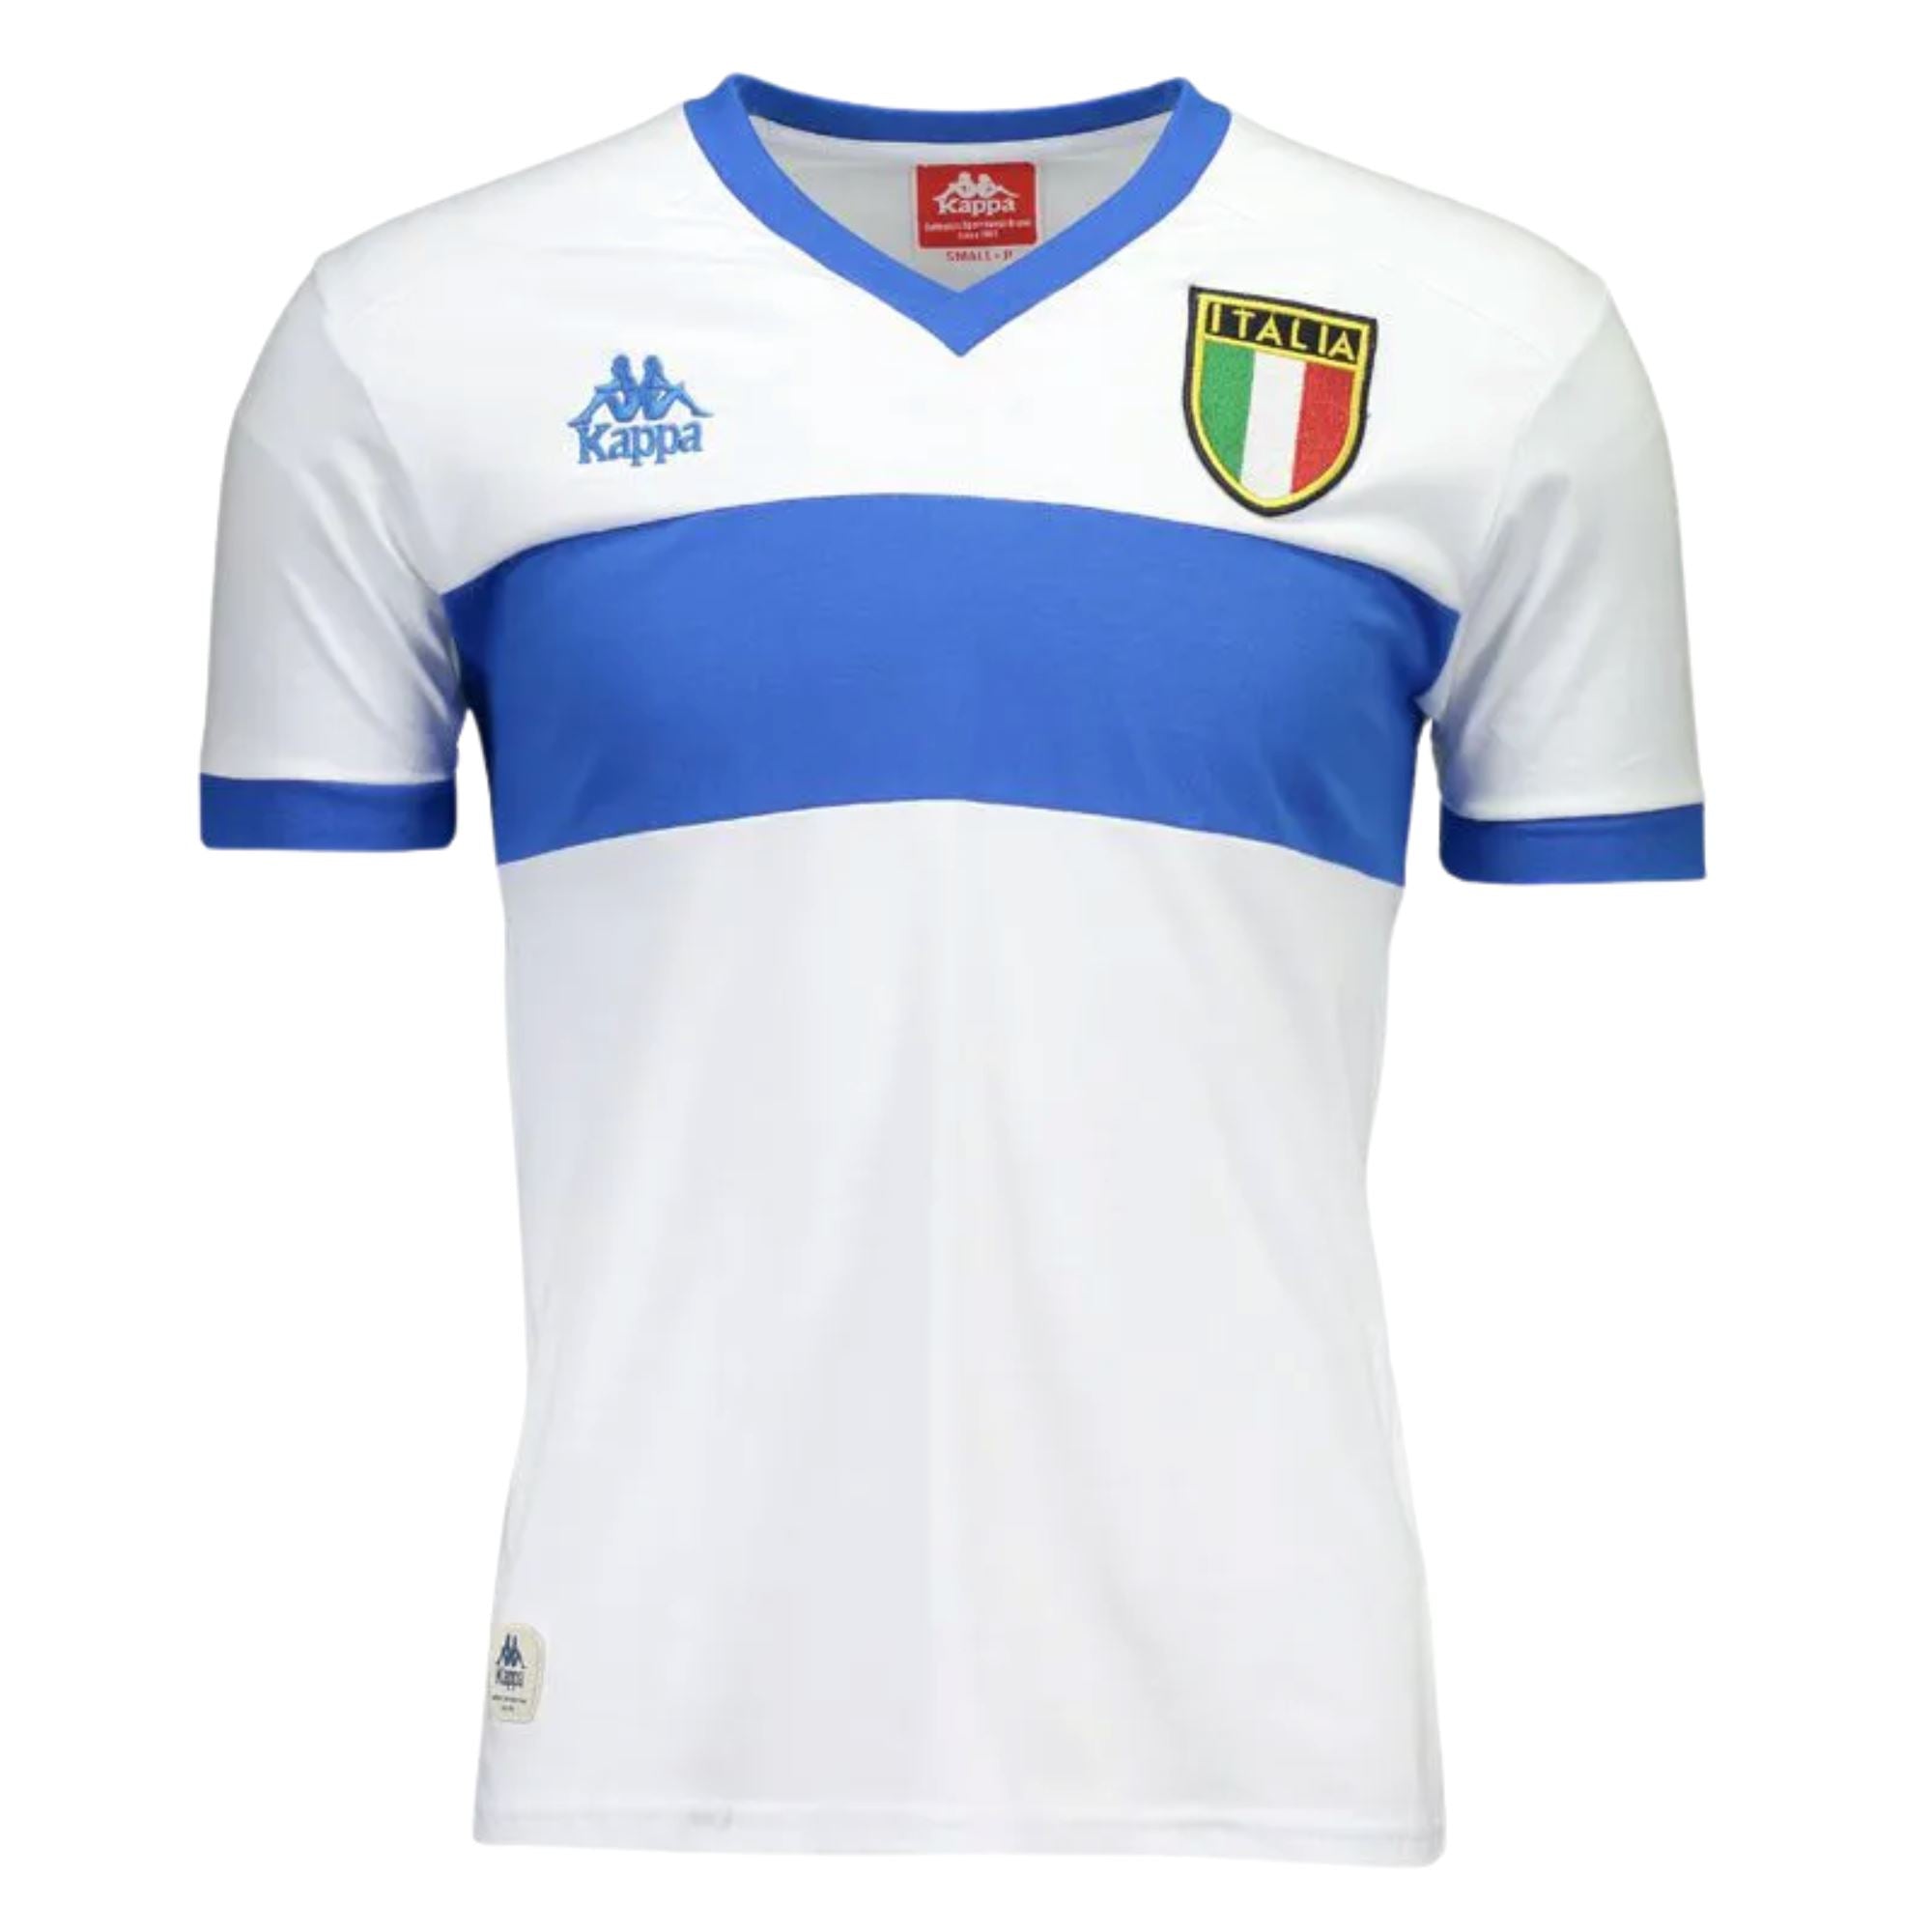 Retro 1982 Italy Home Football Soccer Jersey T-Shirt